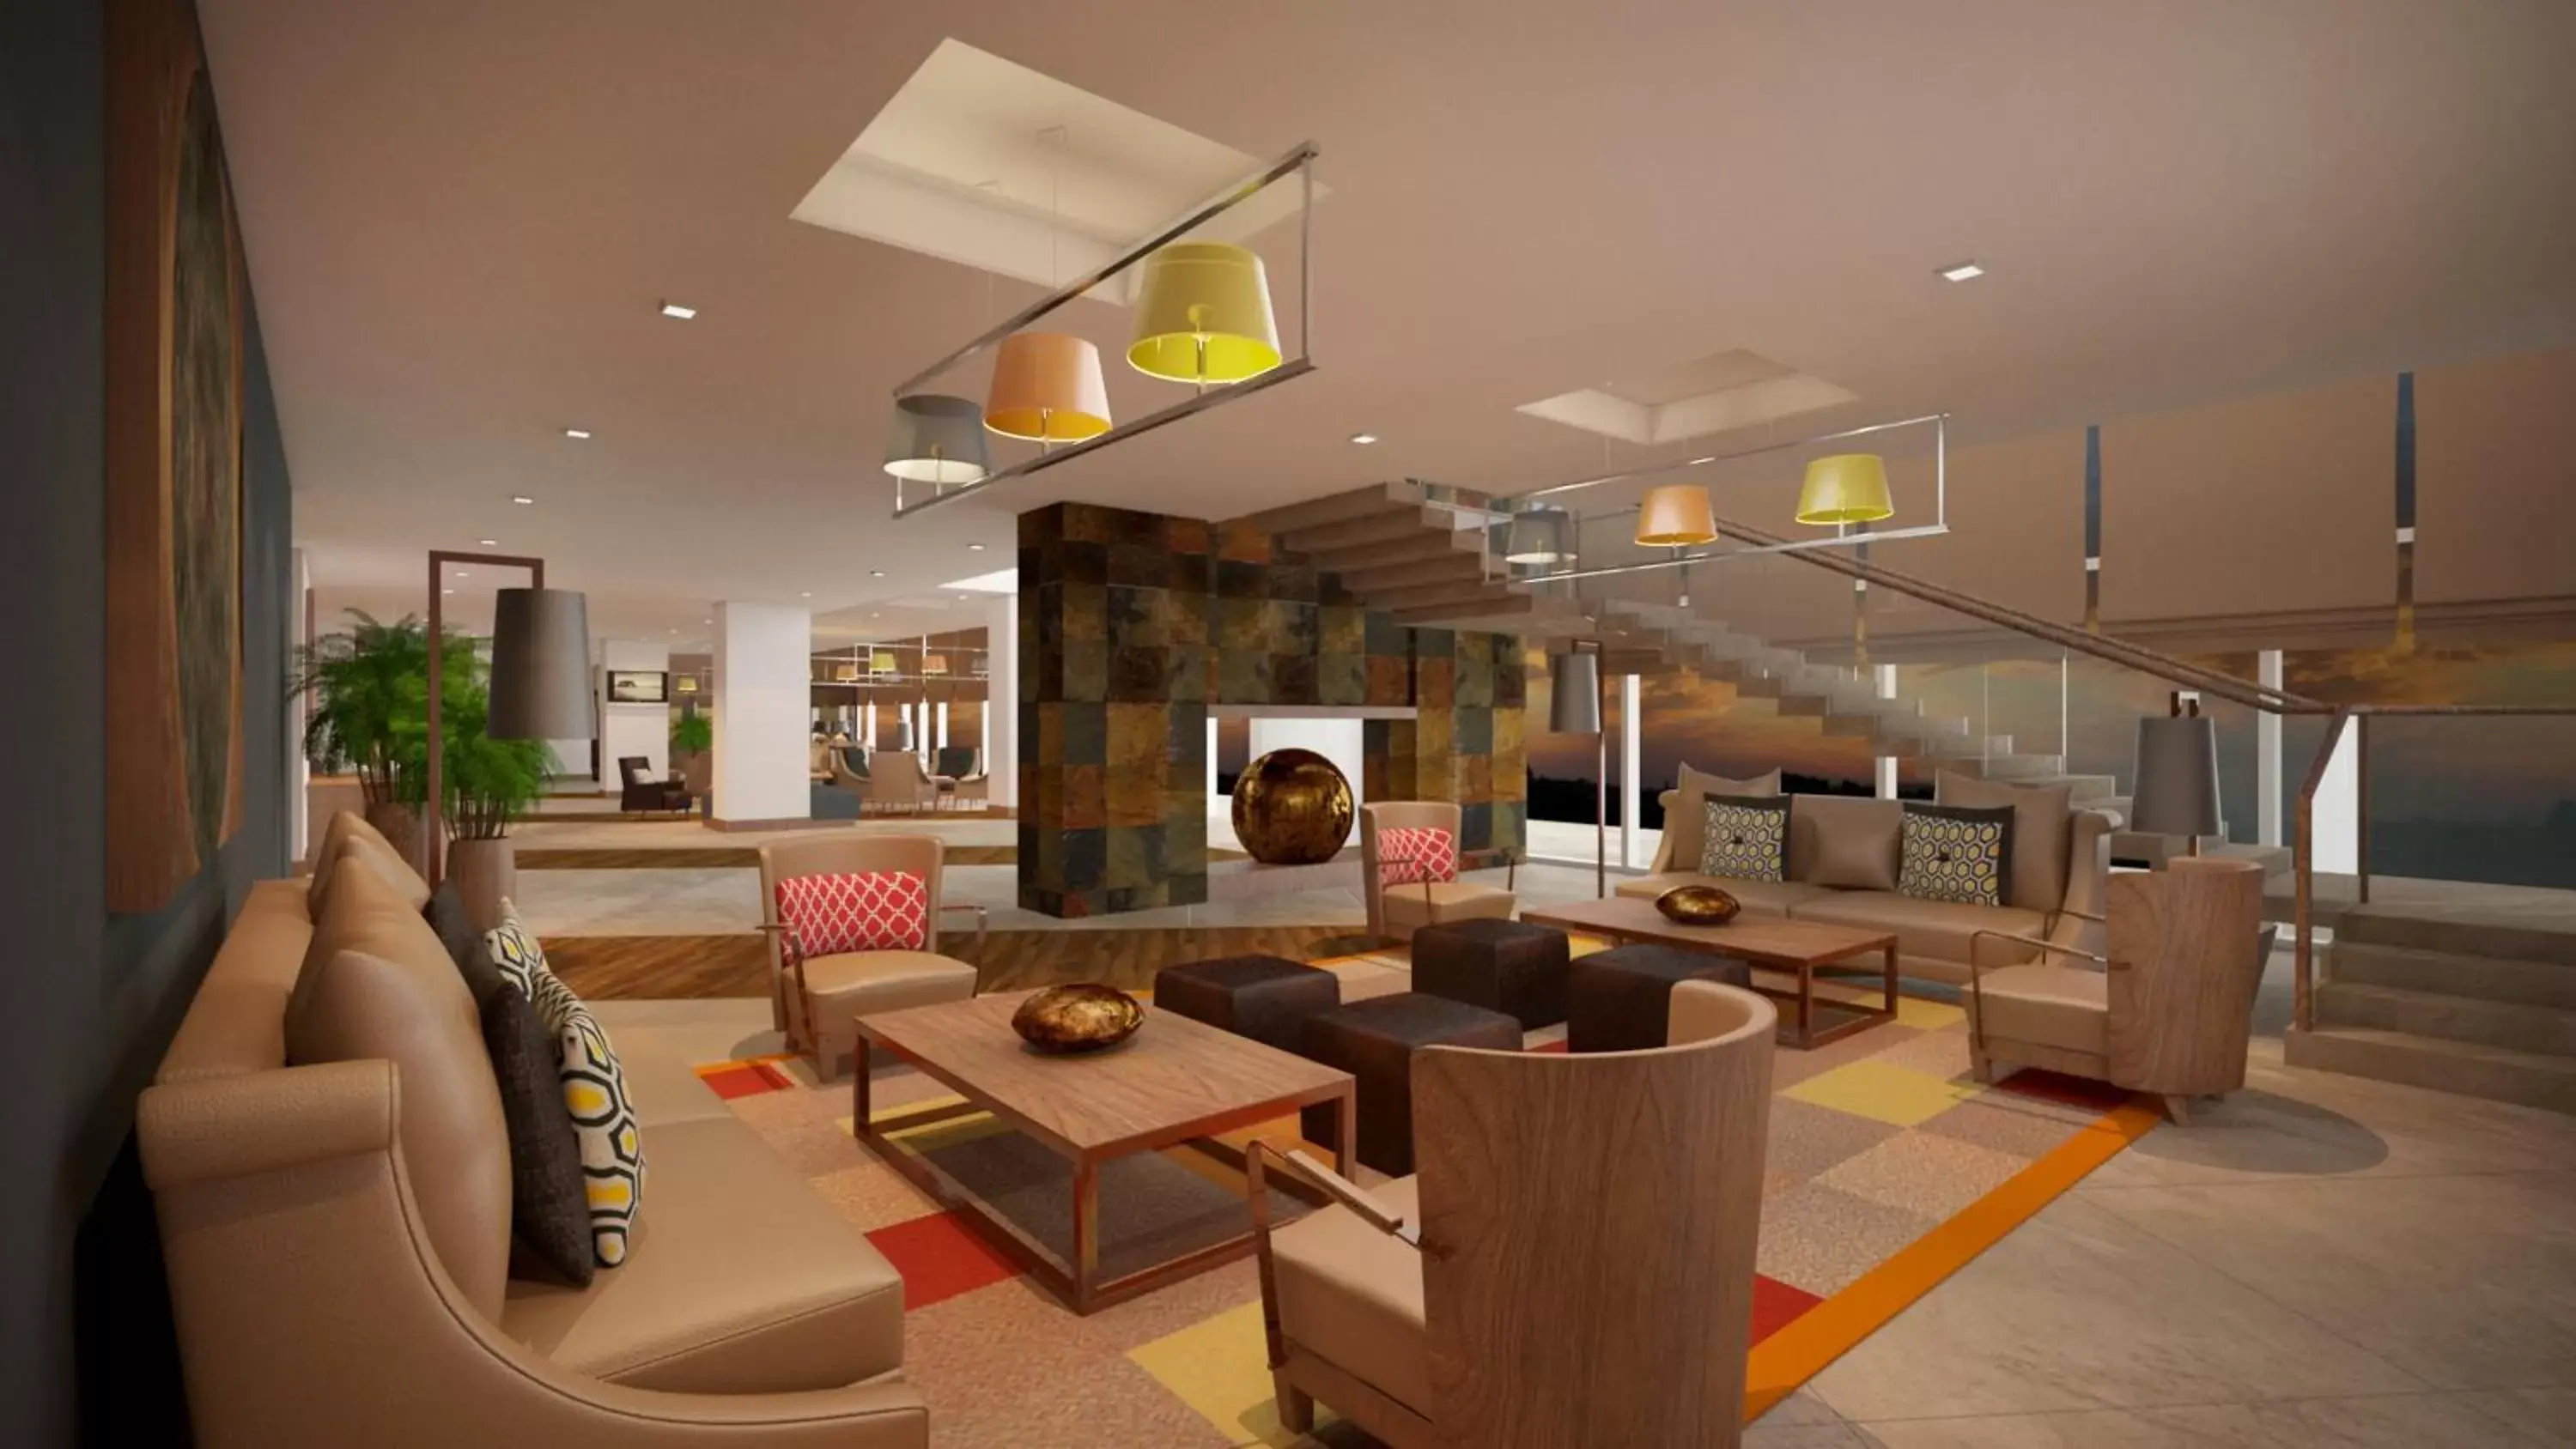 Lobby or reception, Lobby/Reception in Alandalus Mall Hotel - Jeddah